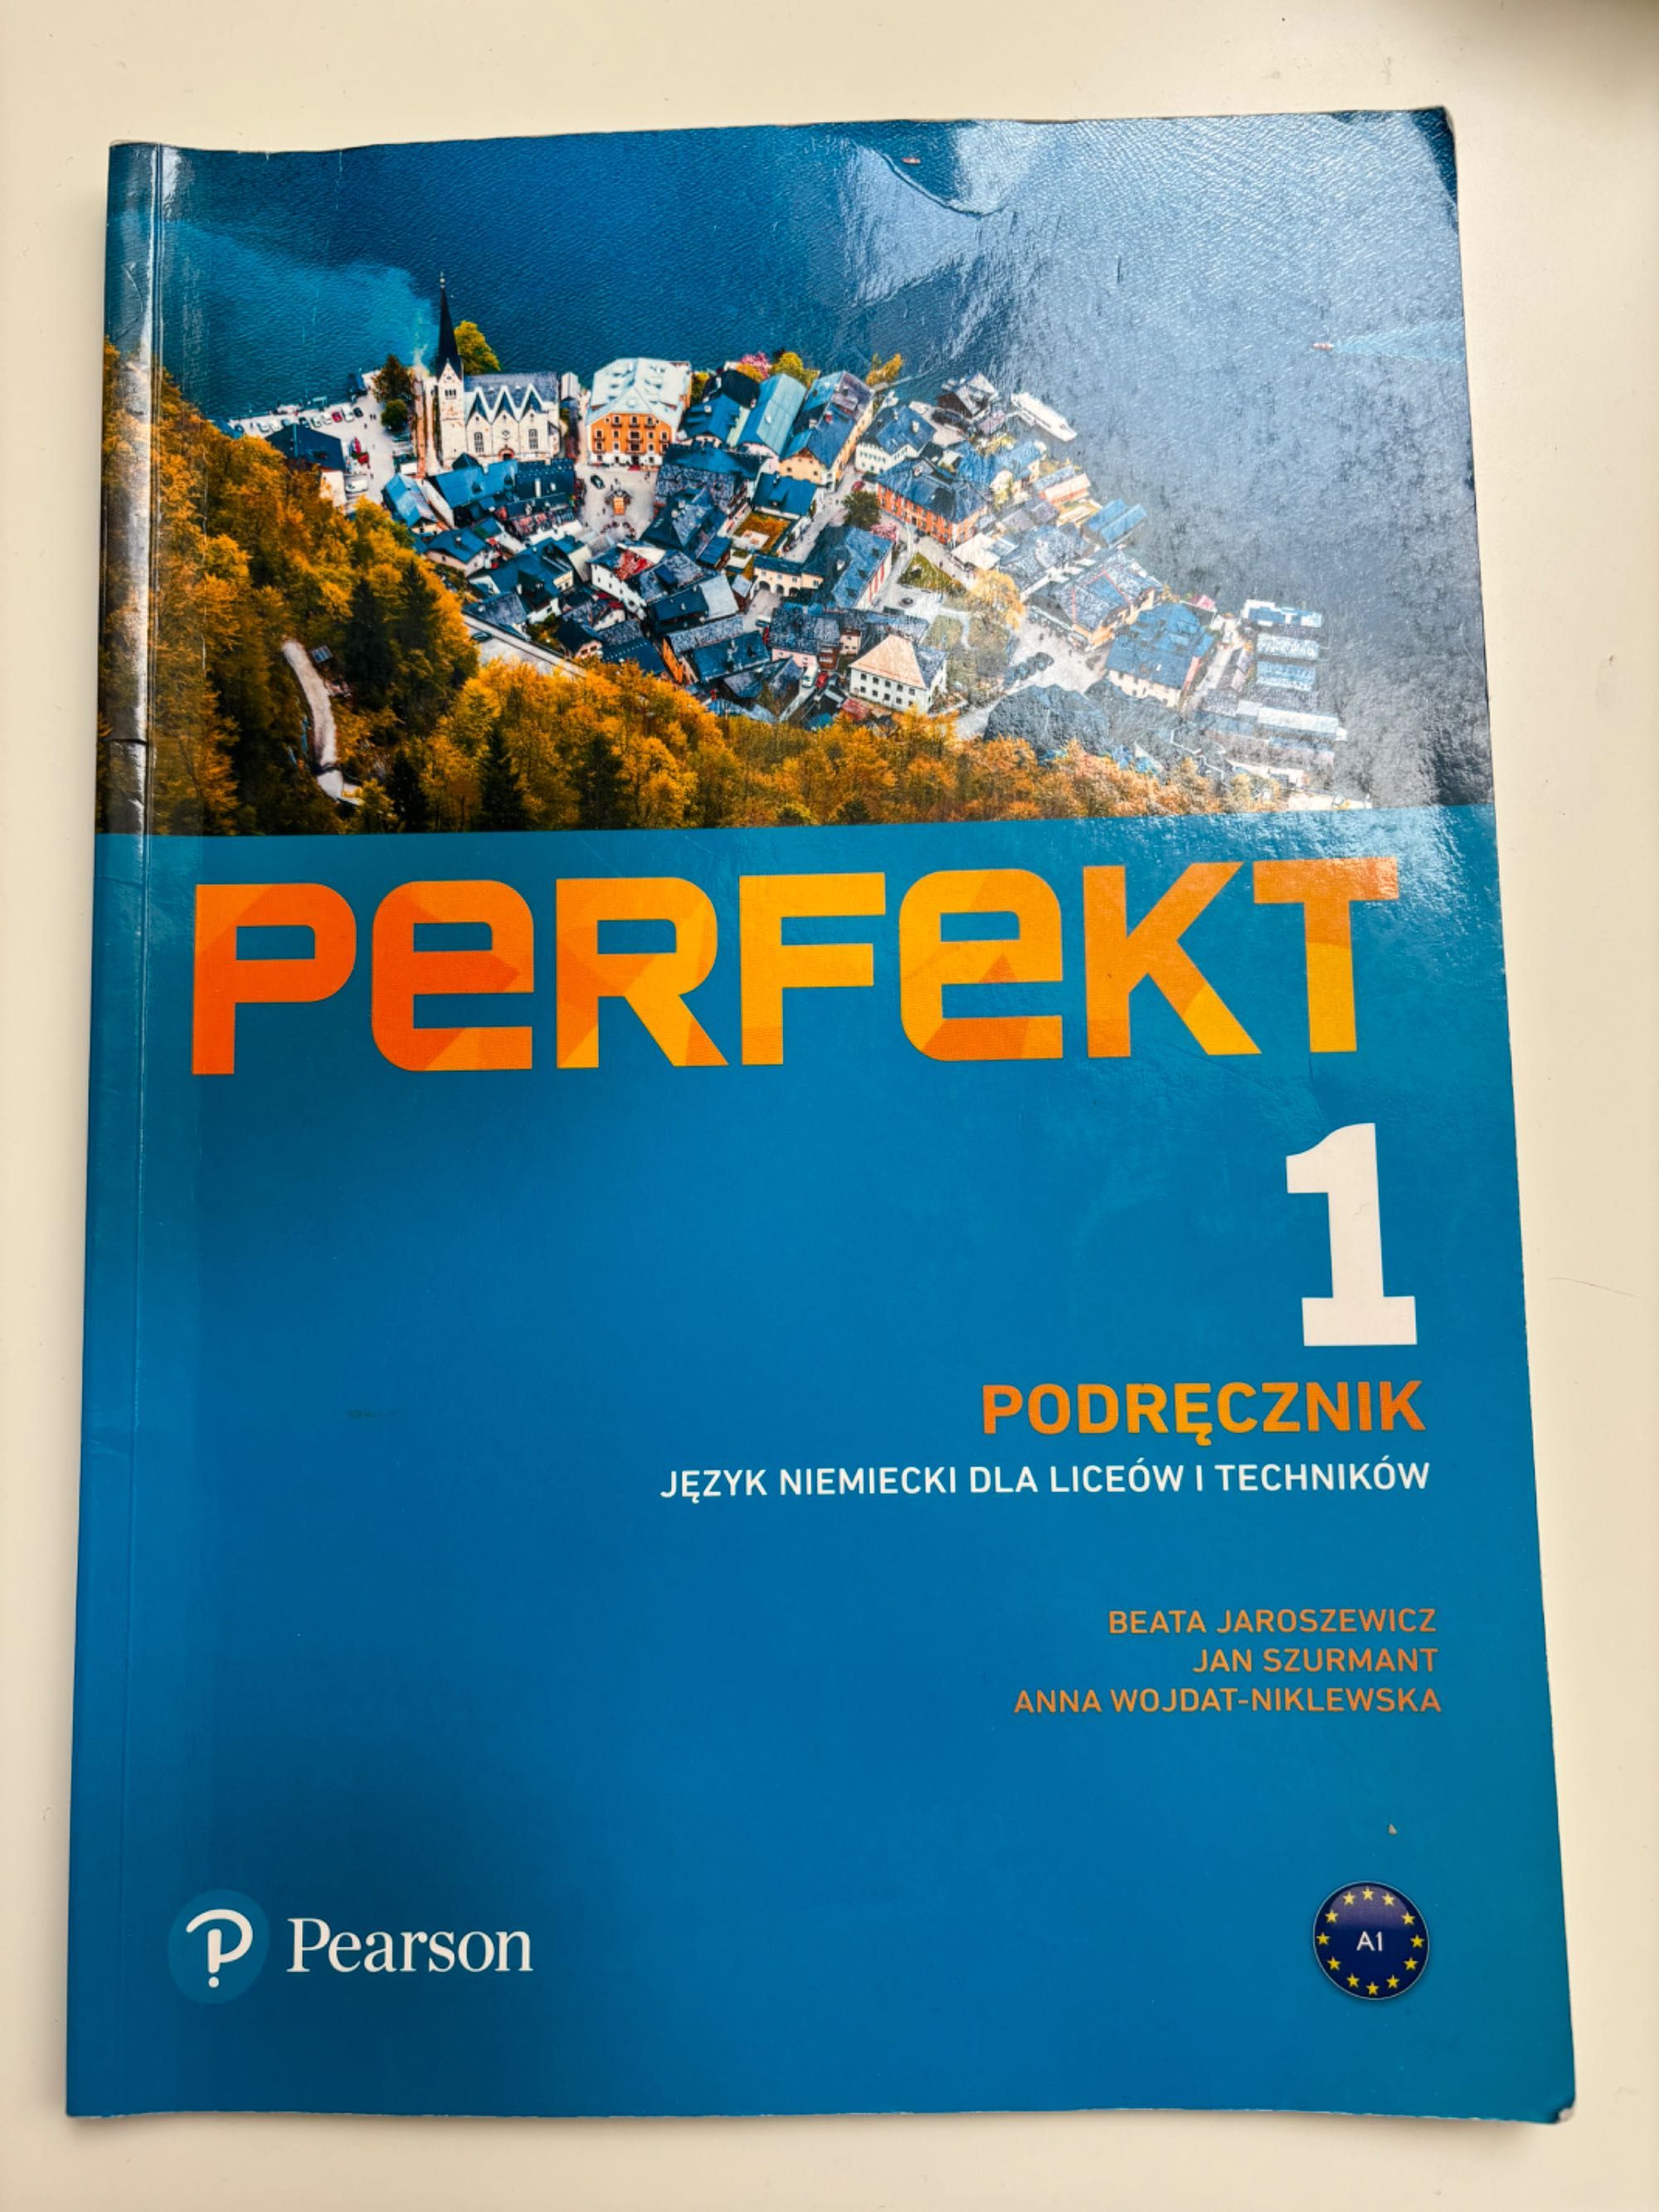 Podręcznik Perfekt 1 wraz ze starterem język niemiecki